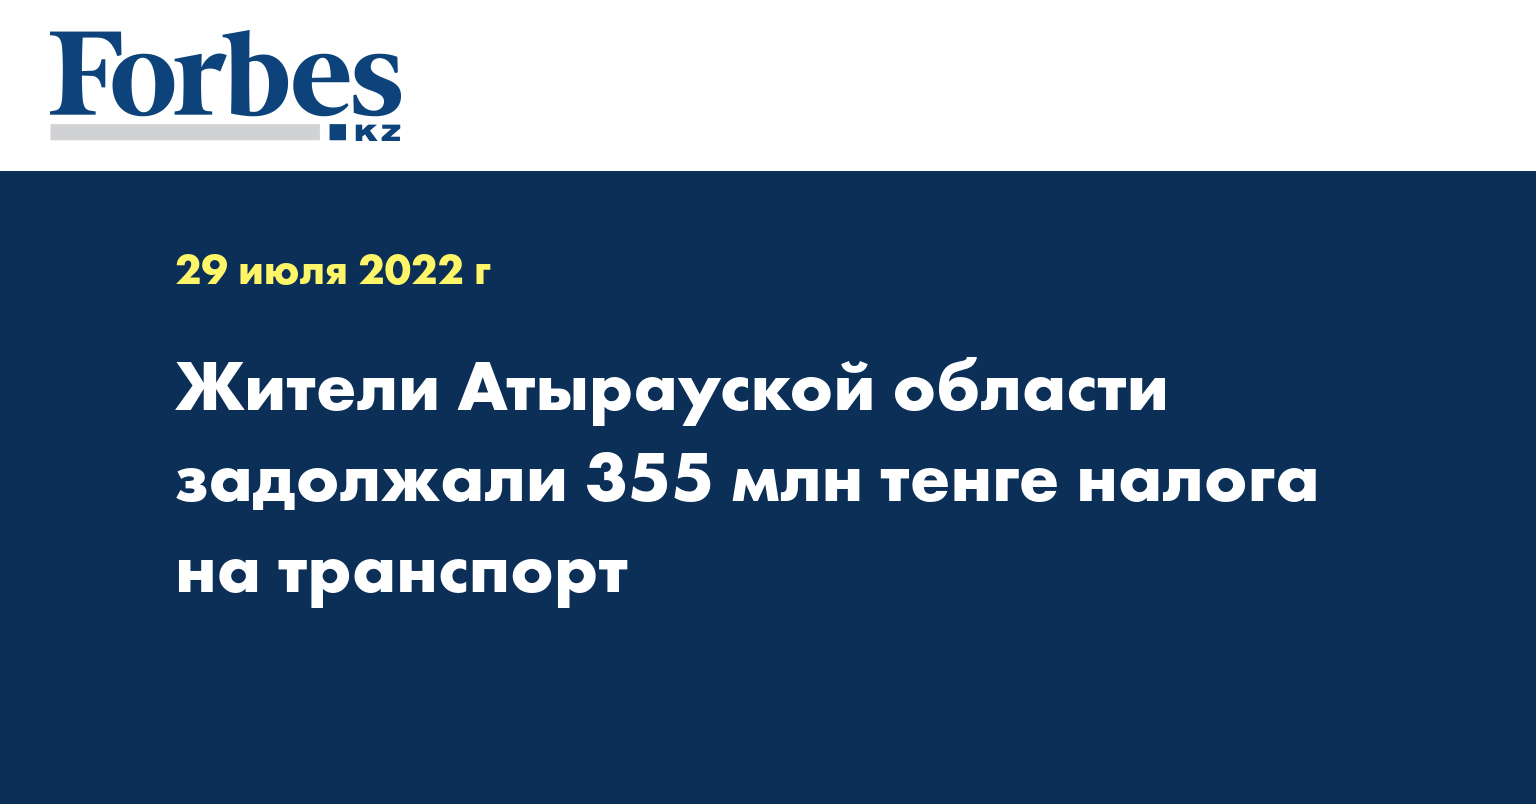 Жители Атырауской области задолжали 355 млн тенге налога на транспорт